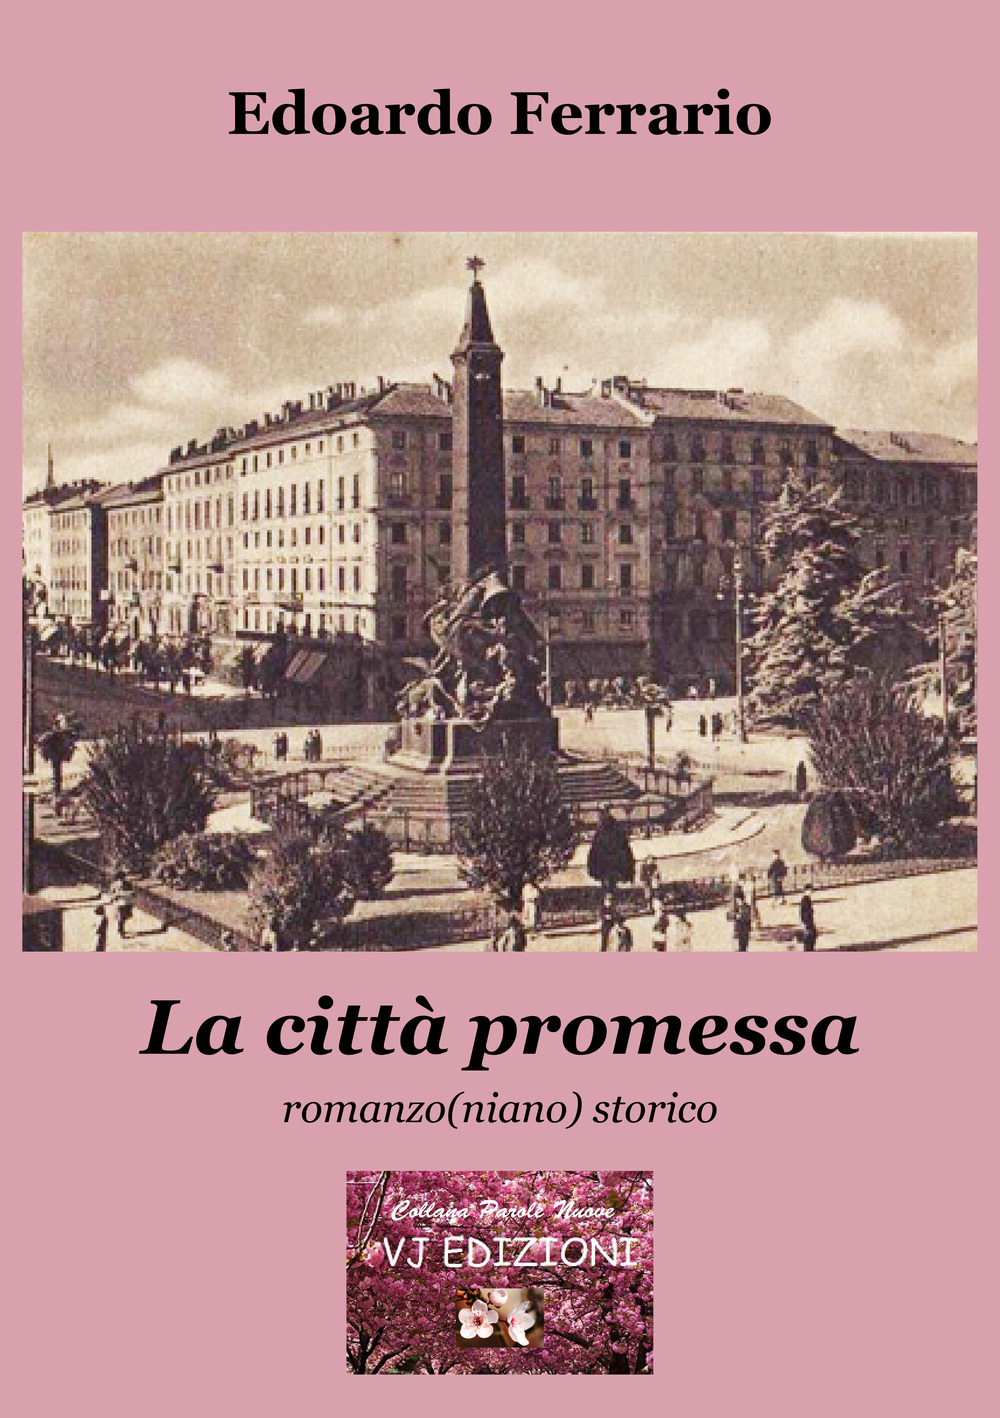 Libri Edoardo Ferrario - La Citta Promessa. Romanzo(Niano) Storico NUOVO SIGILLATO, EDIZIONE DEL 01/11/2019 SUBITO DISPONIBILE